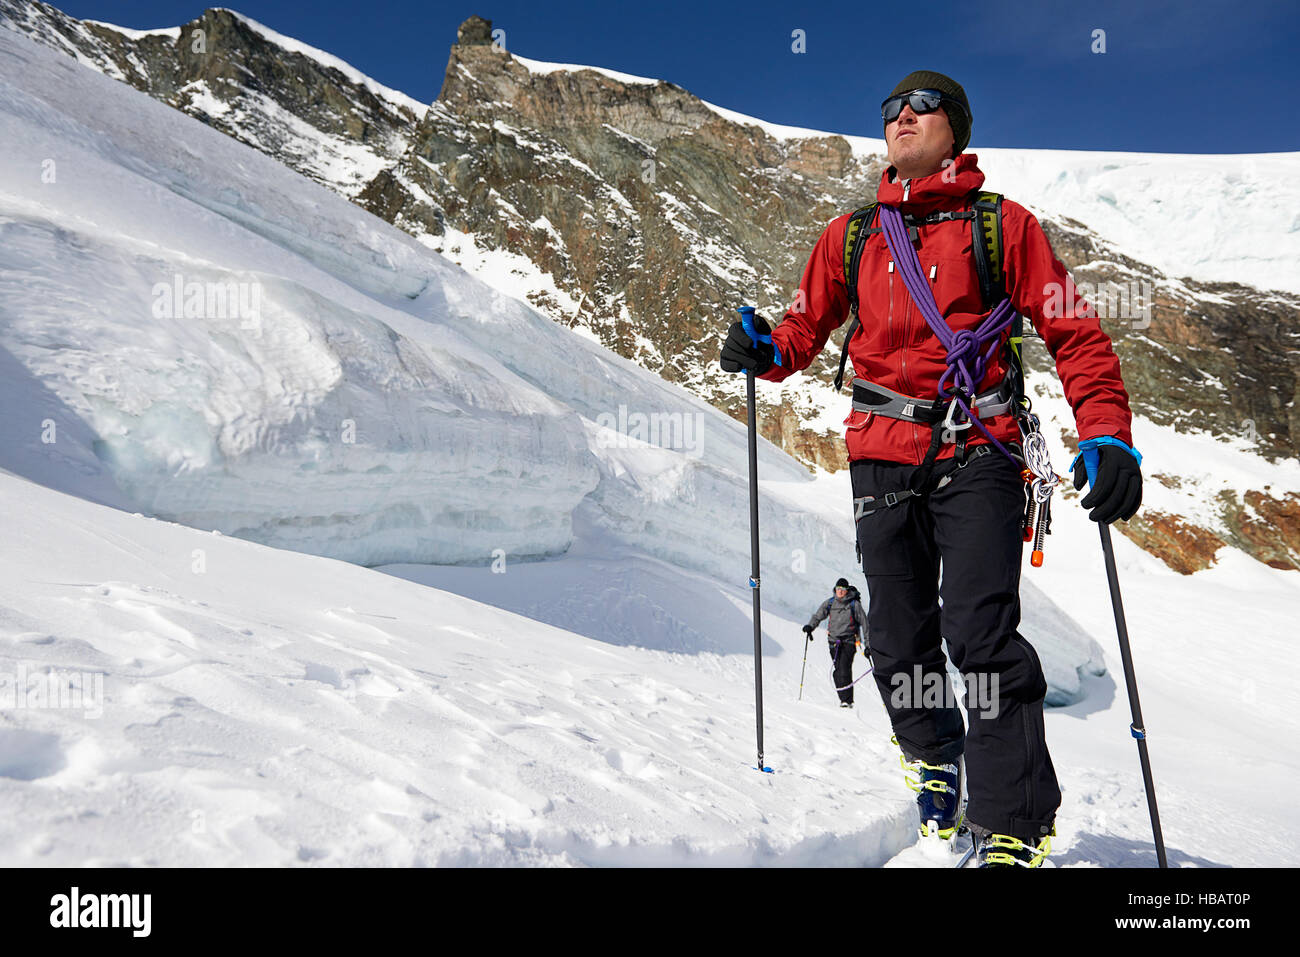 Homme ski de randonnée sur la montagne couverte de neige, Saas Fee, Suisse Banque D'Images